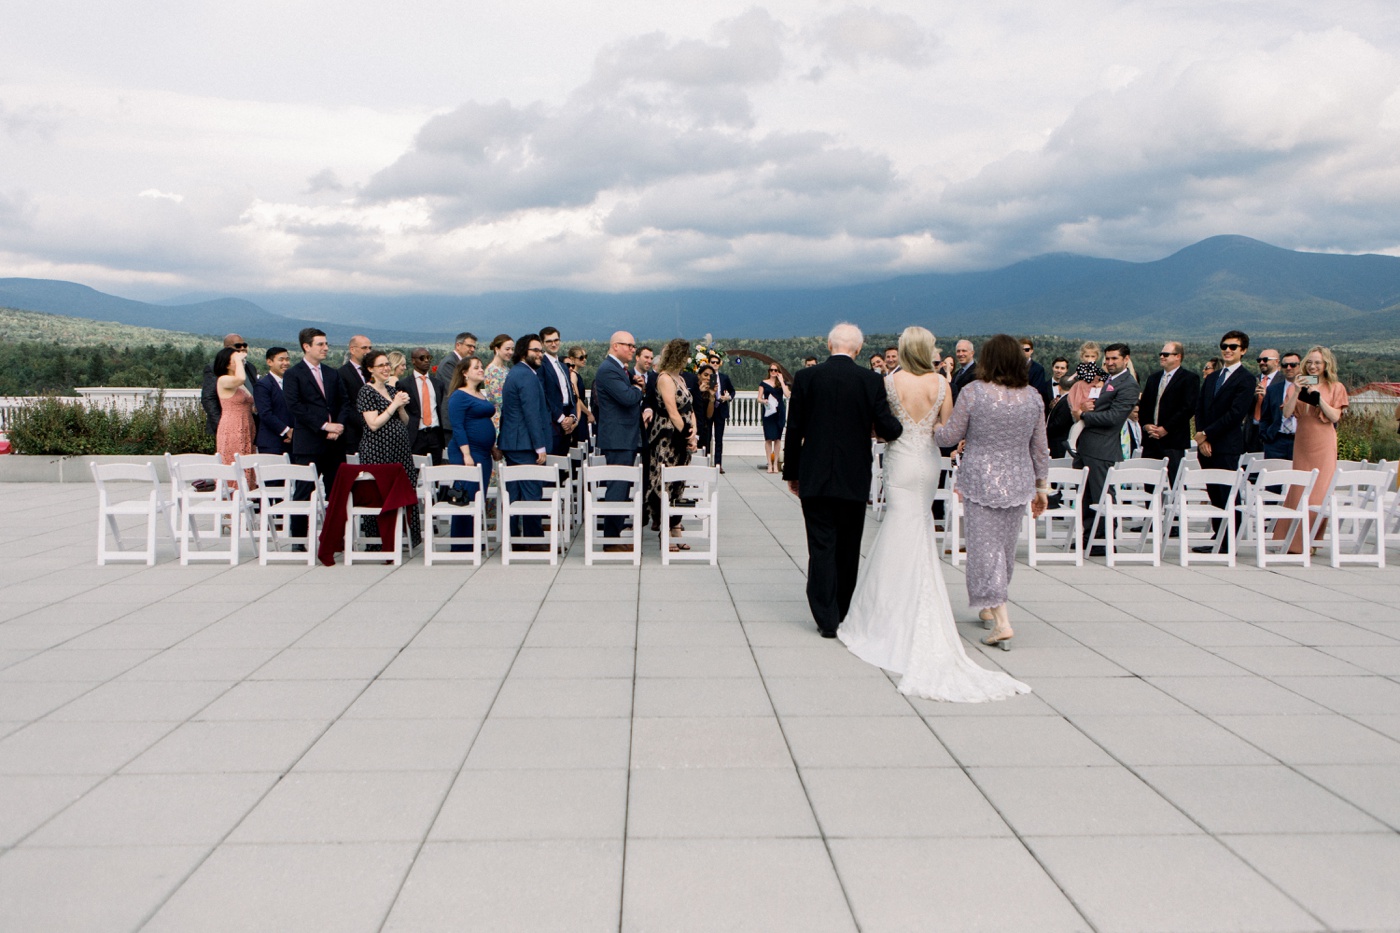 Wedding ceremony overlooking Mount Washington